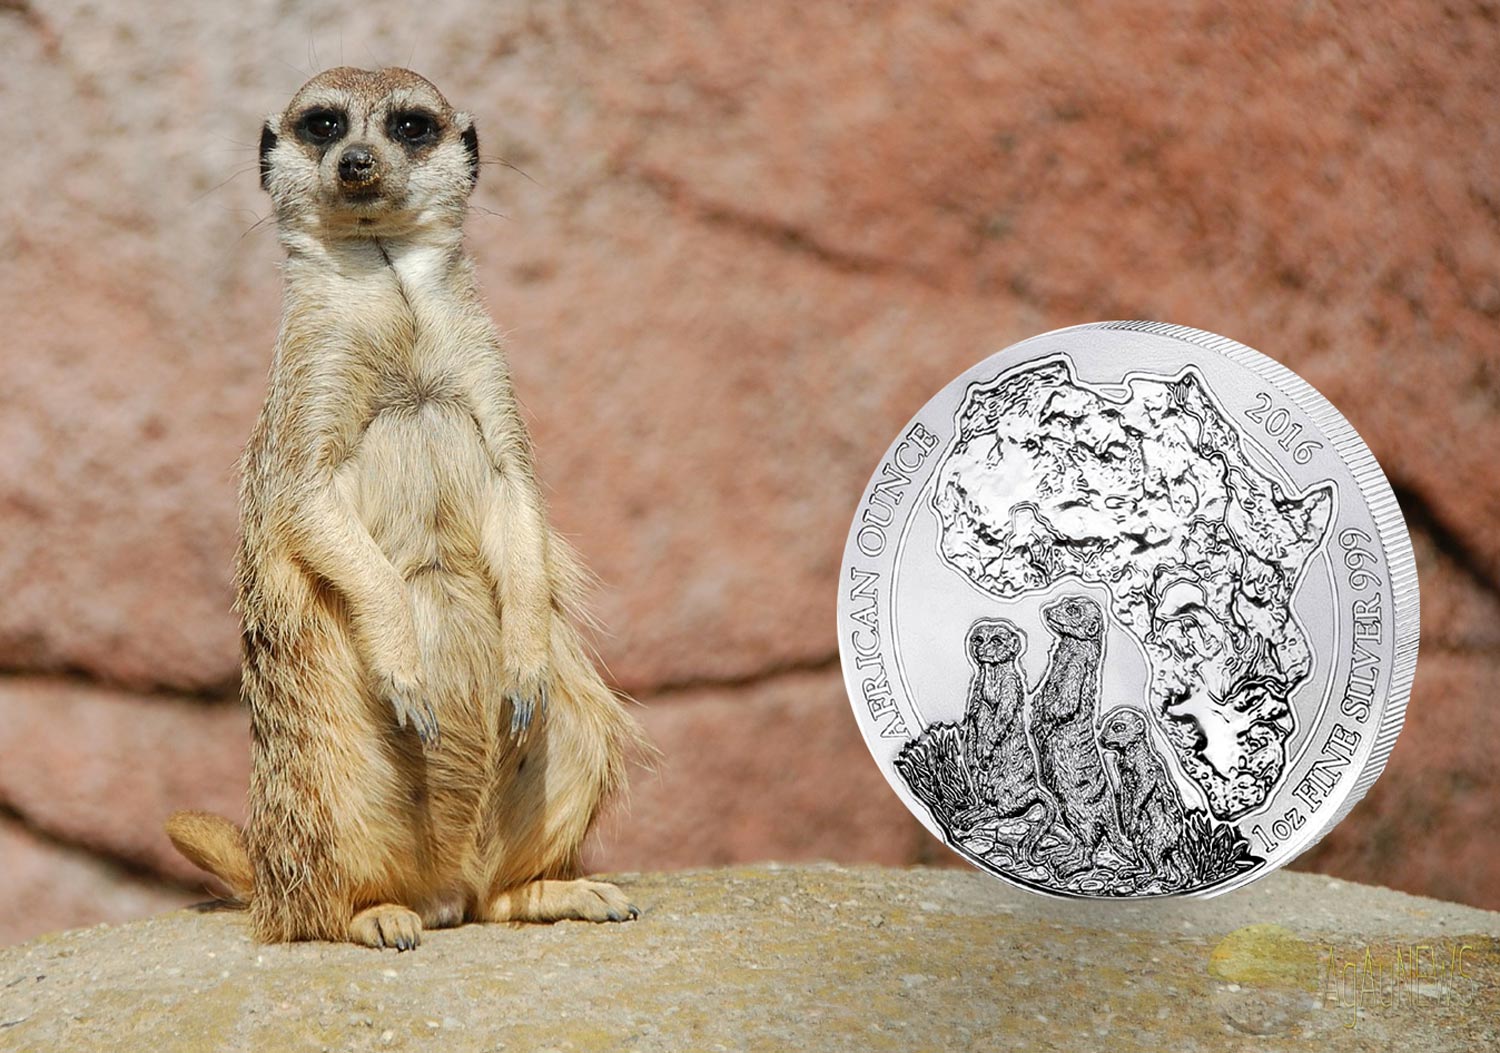  RWANDA Bullion Coin 2016 Meerkats BU - 1 Unze Fein Silber   